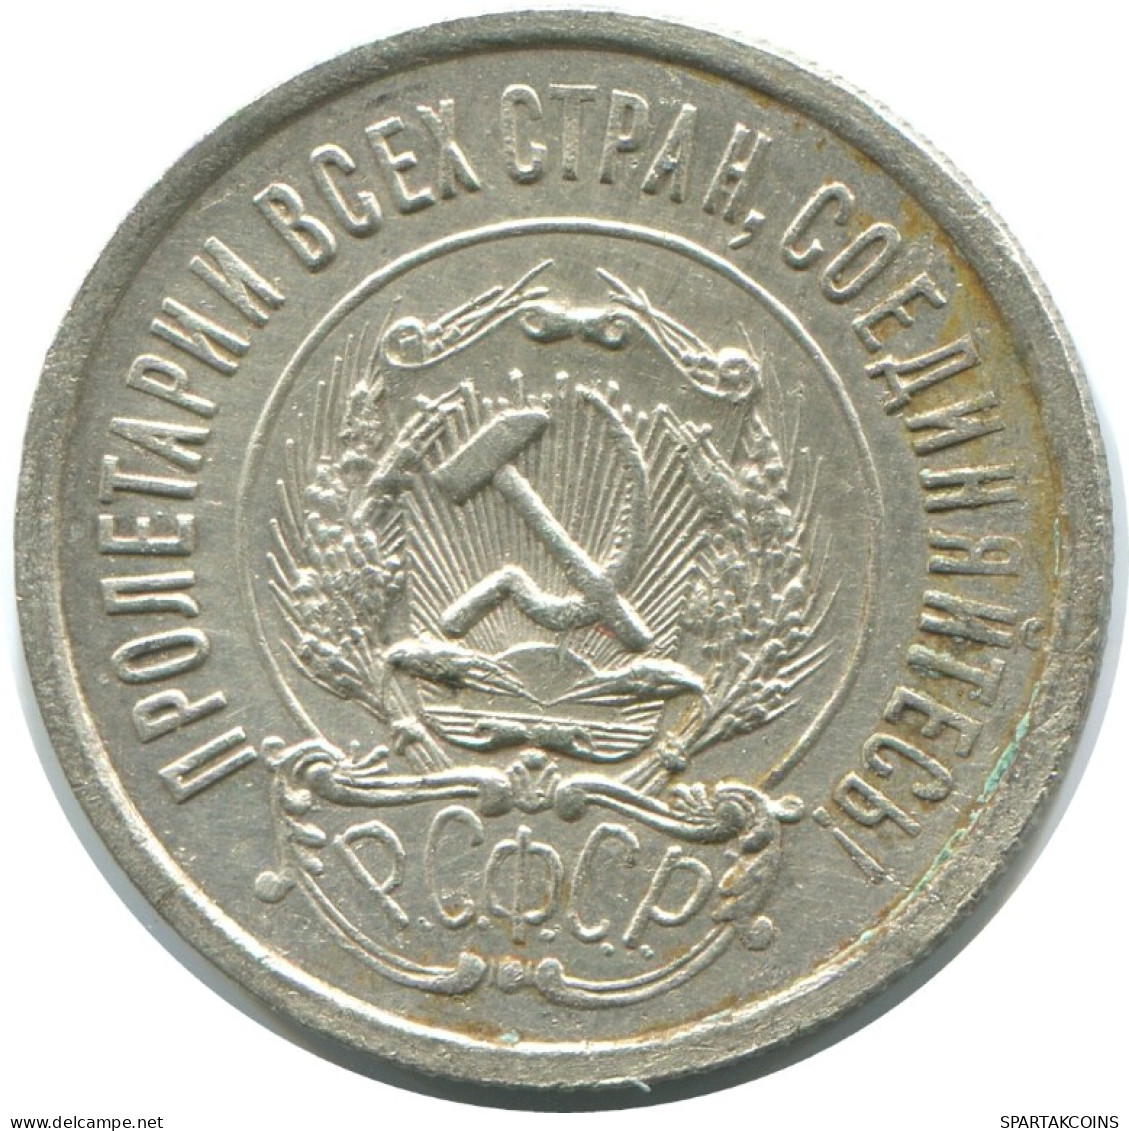 20 KOPEKS 1923 RUSSLAND RUSSIA RSFSR SILBER Münze HIGH GRADE #AF547.4.D.A - Russia